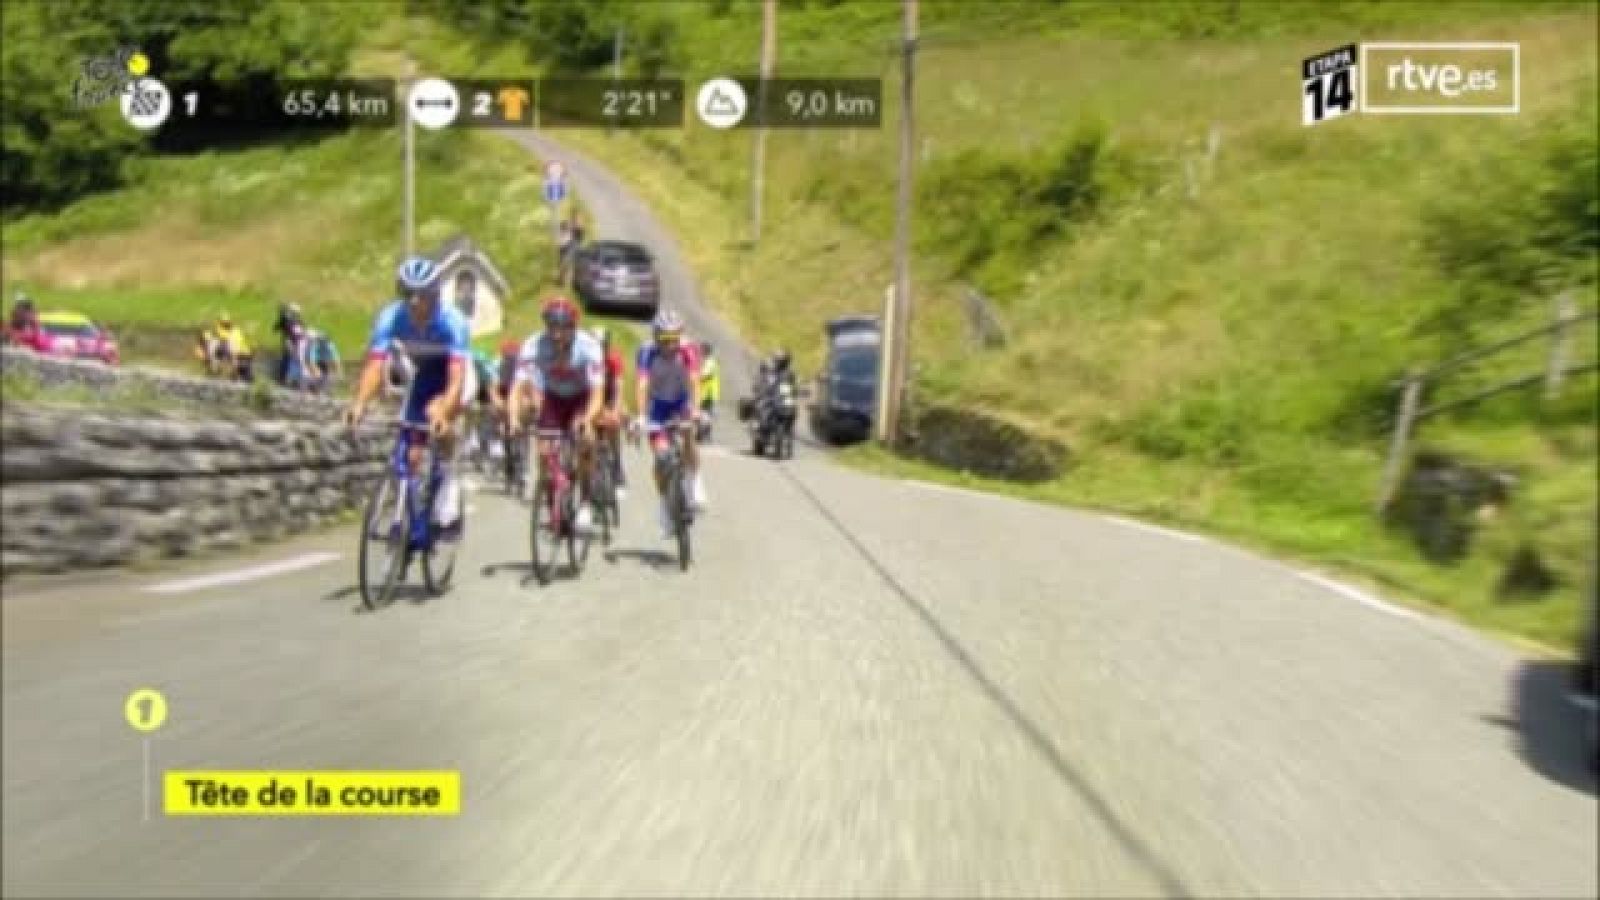 Etapa 14 del Tour de Francia en | RTVE.es 